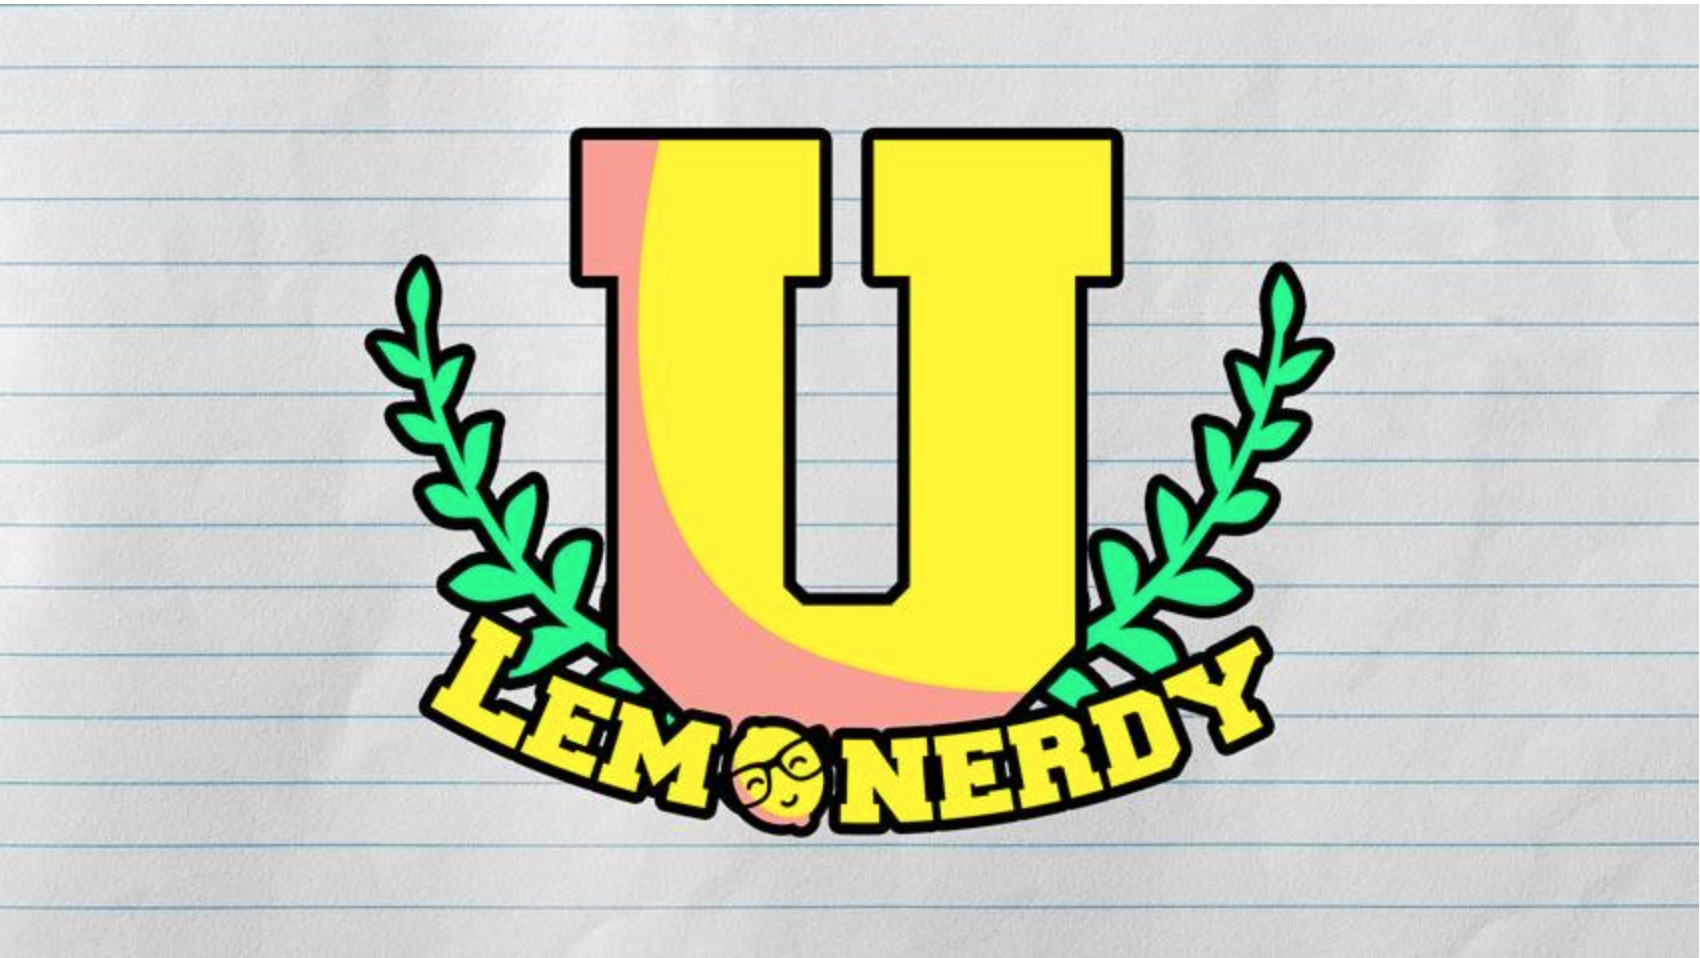 Lemonerdy University Card Image